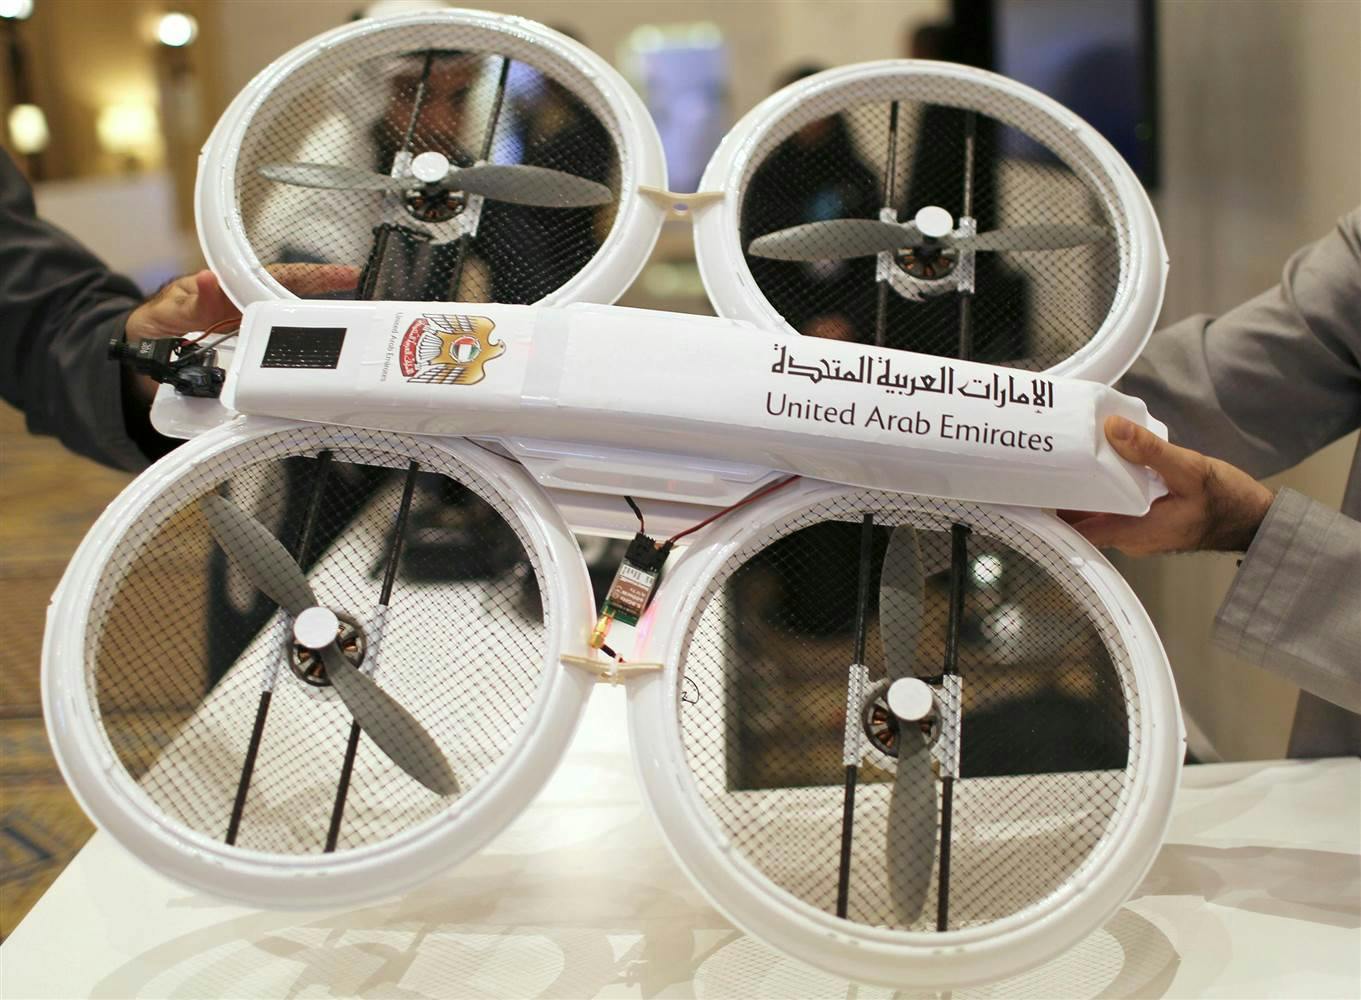 UAE aviation authority gives drone warning